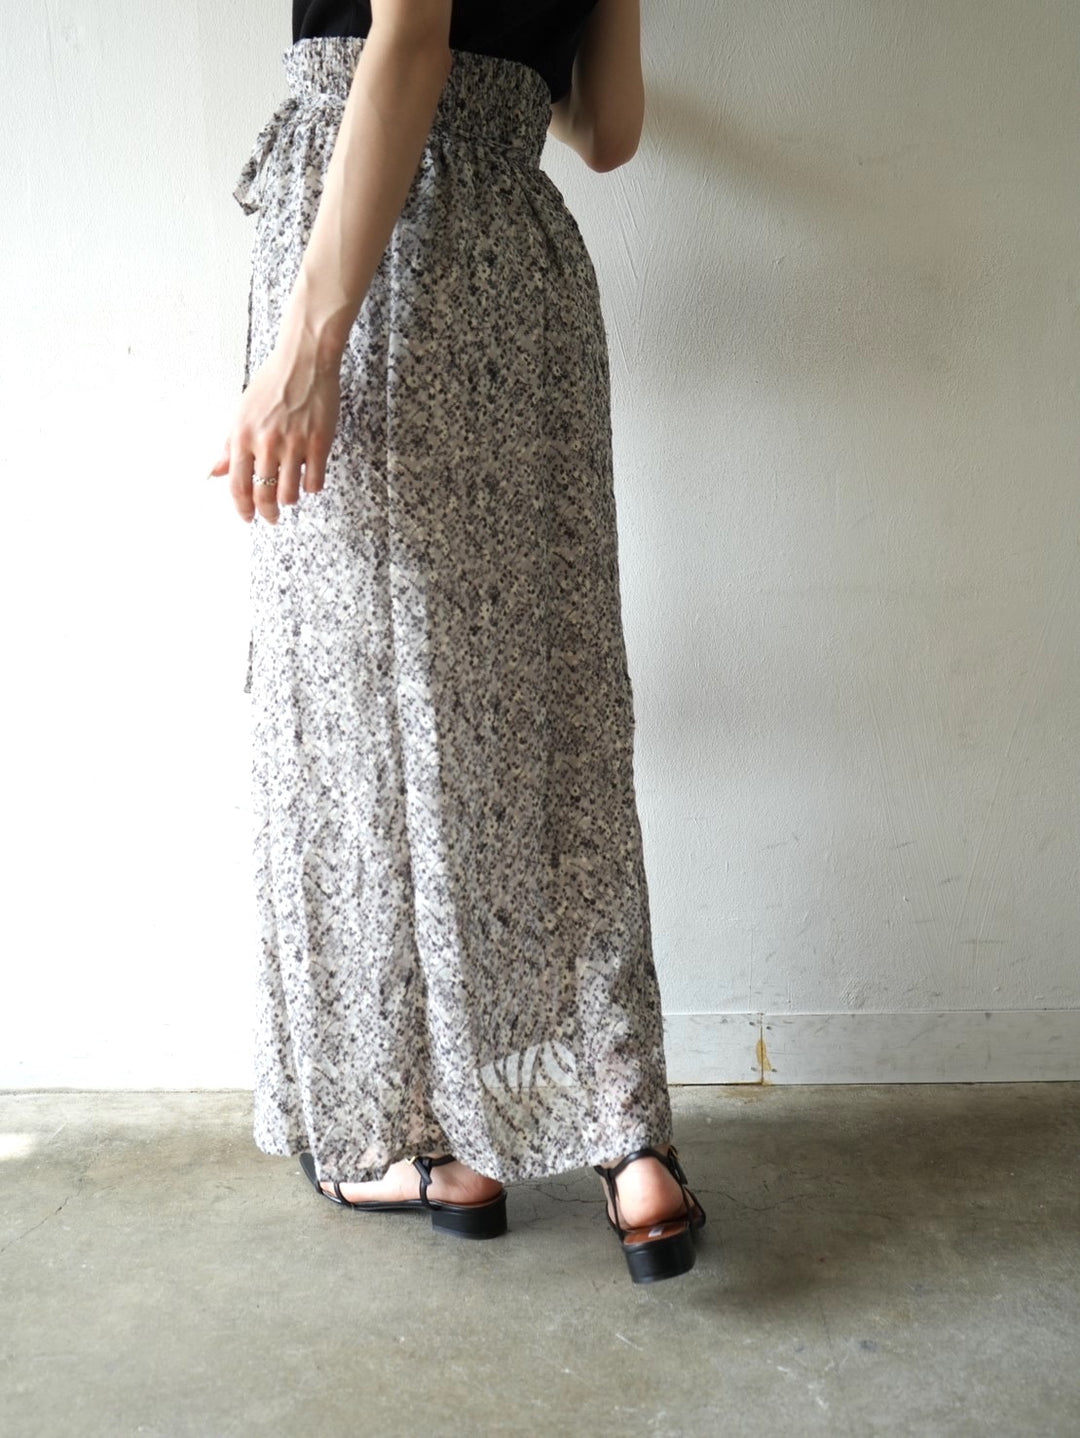 Jacquard flower print flare skirt/light gray